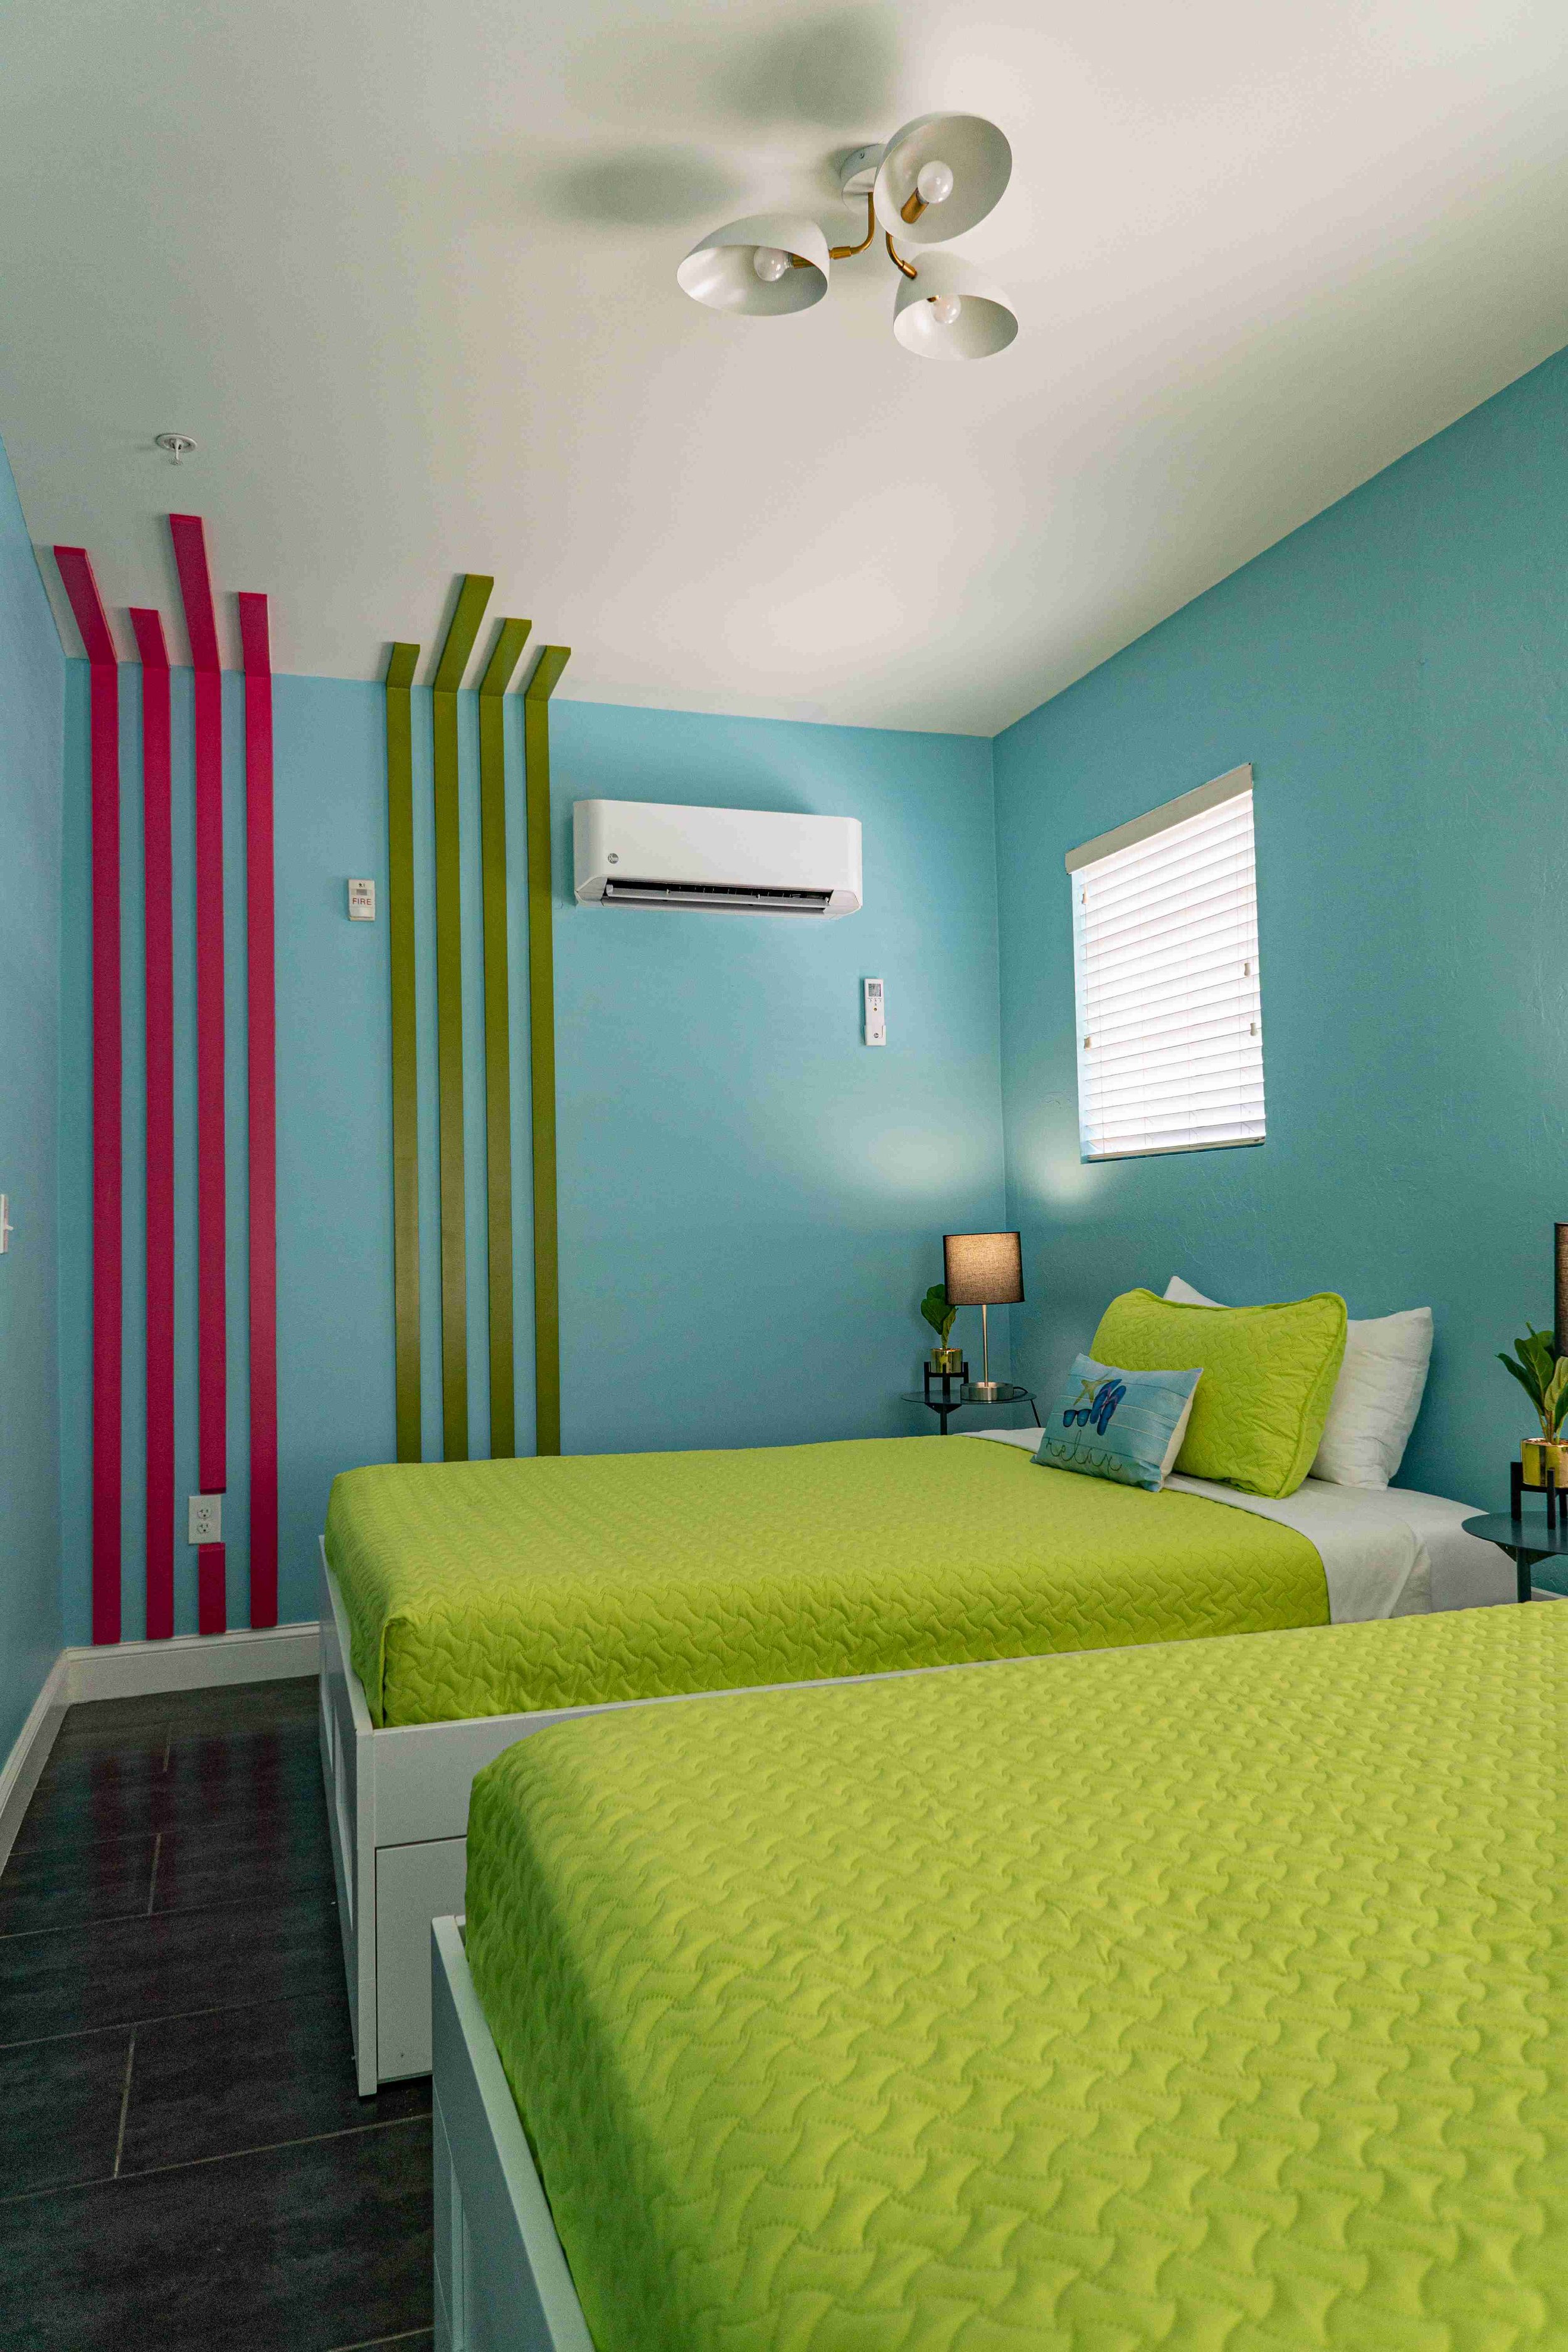 Beds N' Drinks - Miami Beach - Room - Queen Room with 2 Queen Beds - 13.jpg